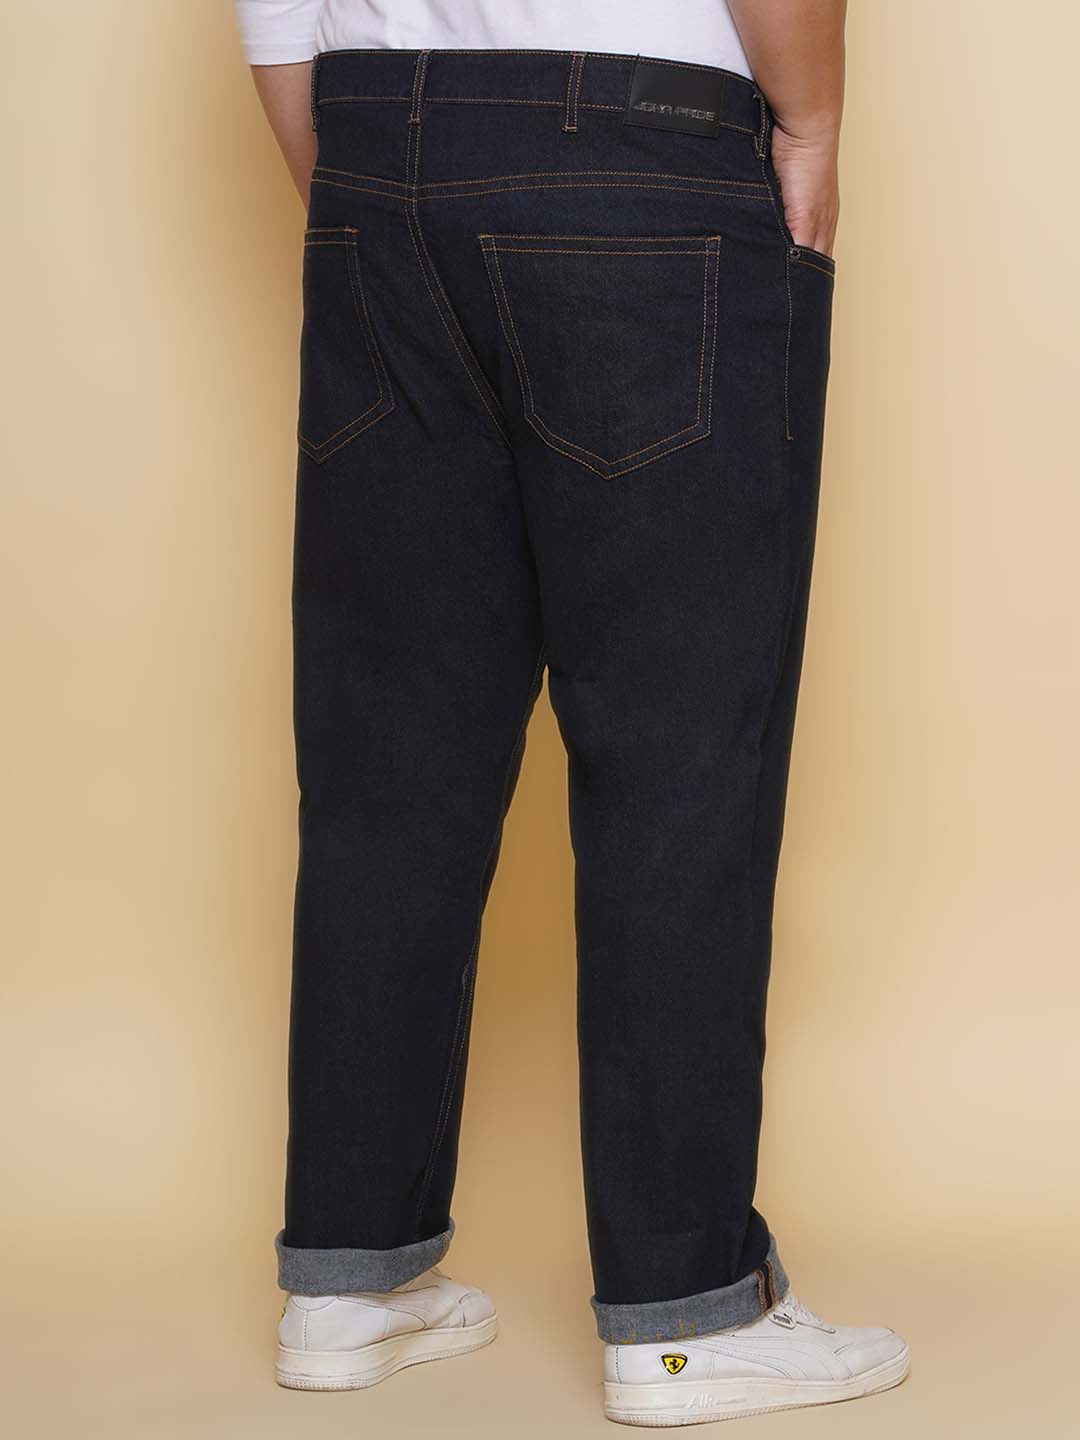 bottomwear/jeans/PJPJ60101/pjpj60101-5.jpg